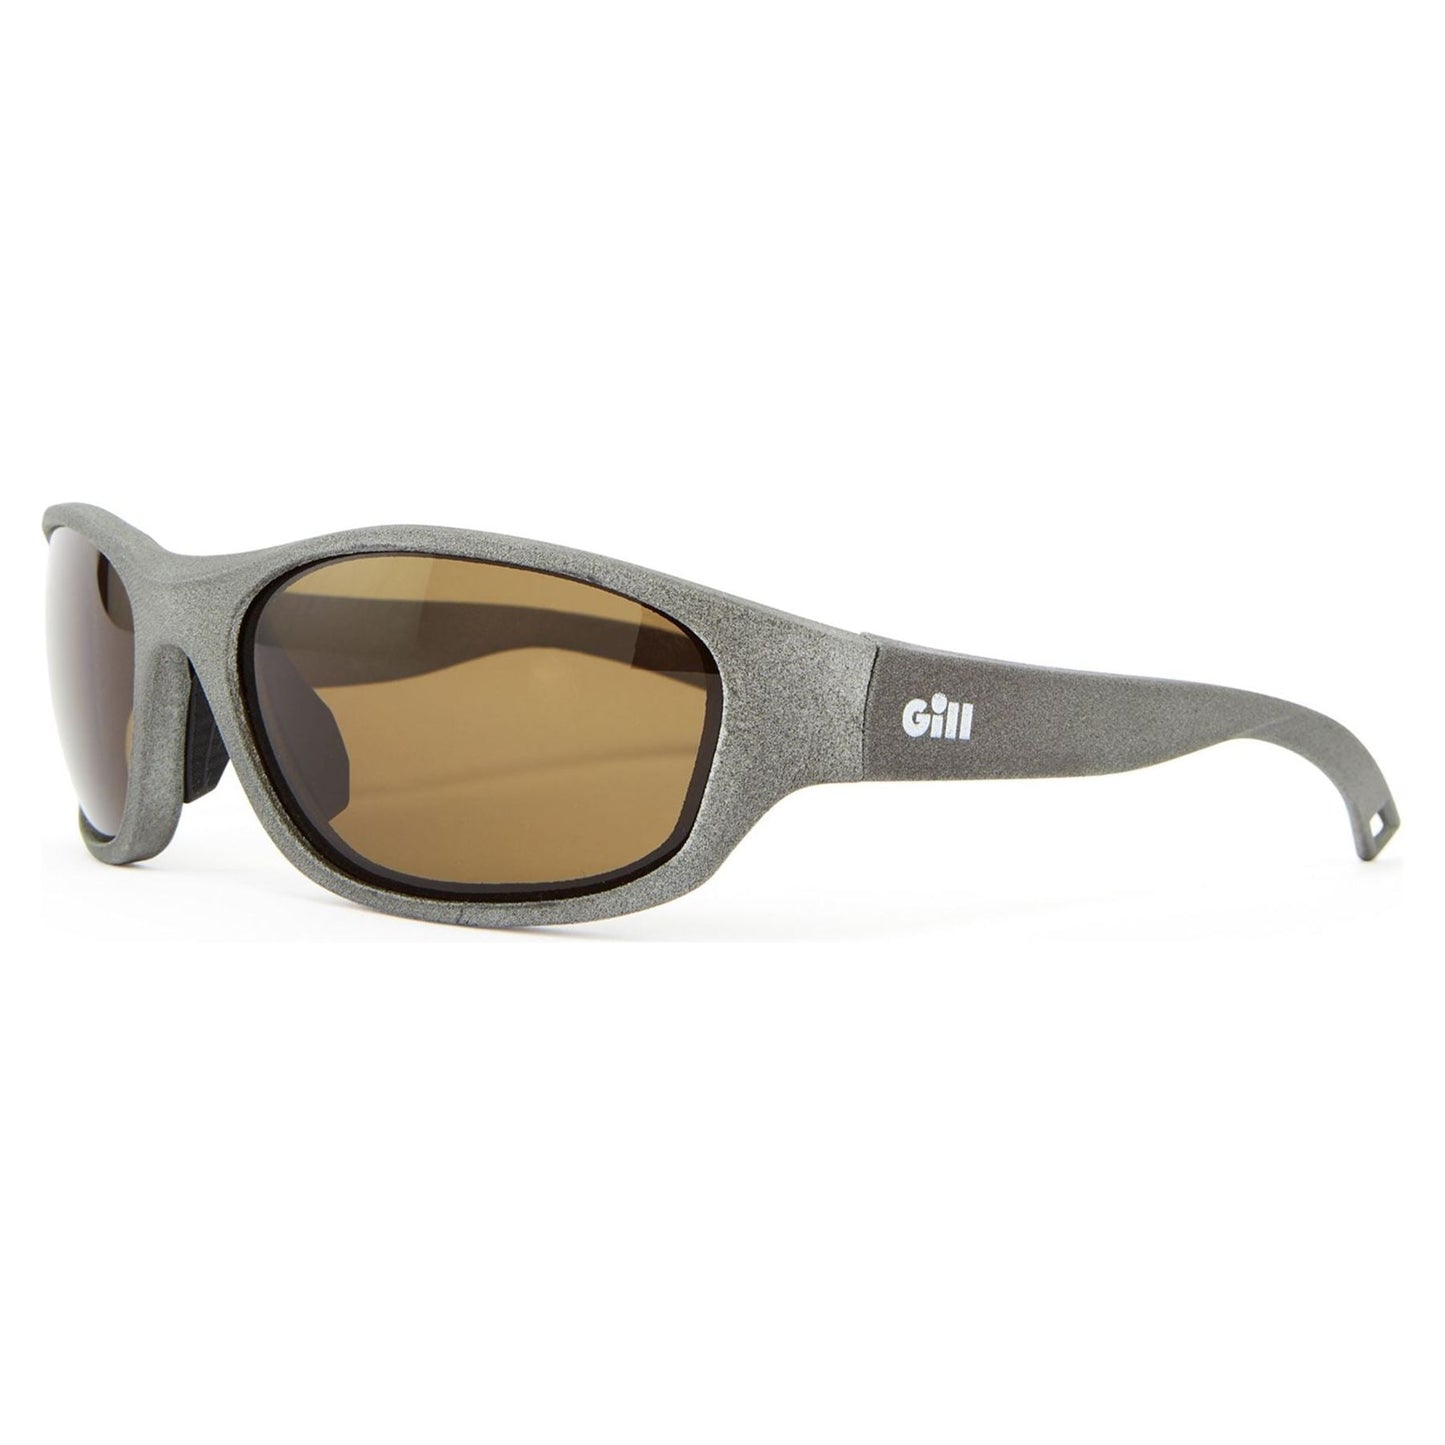 Gill Classic Sunglasses